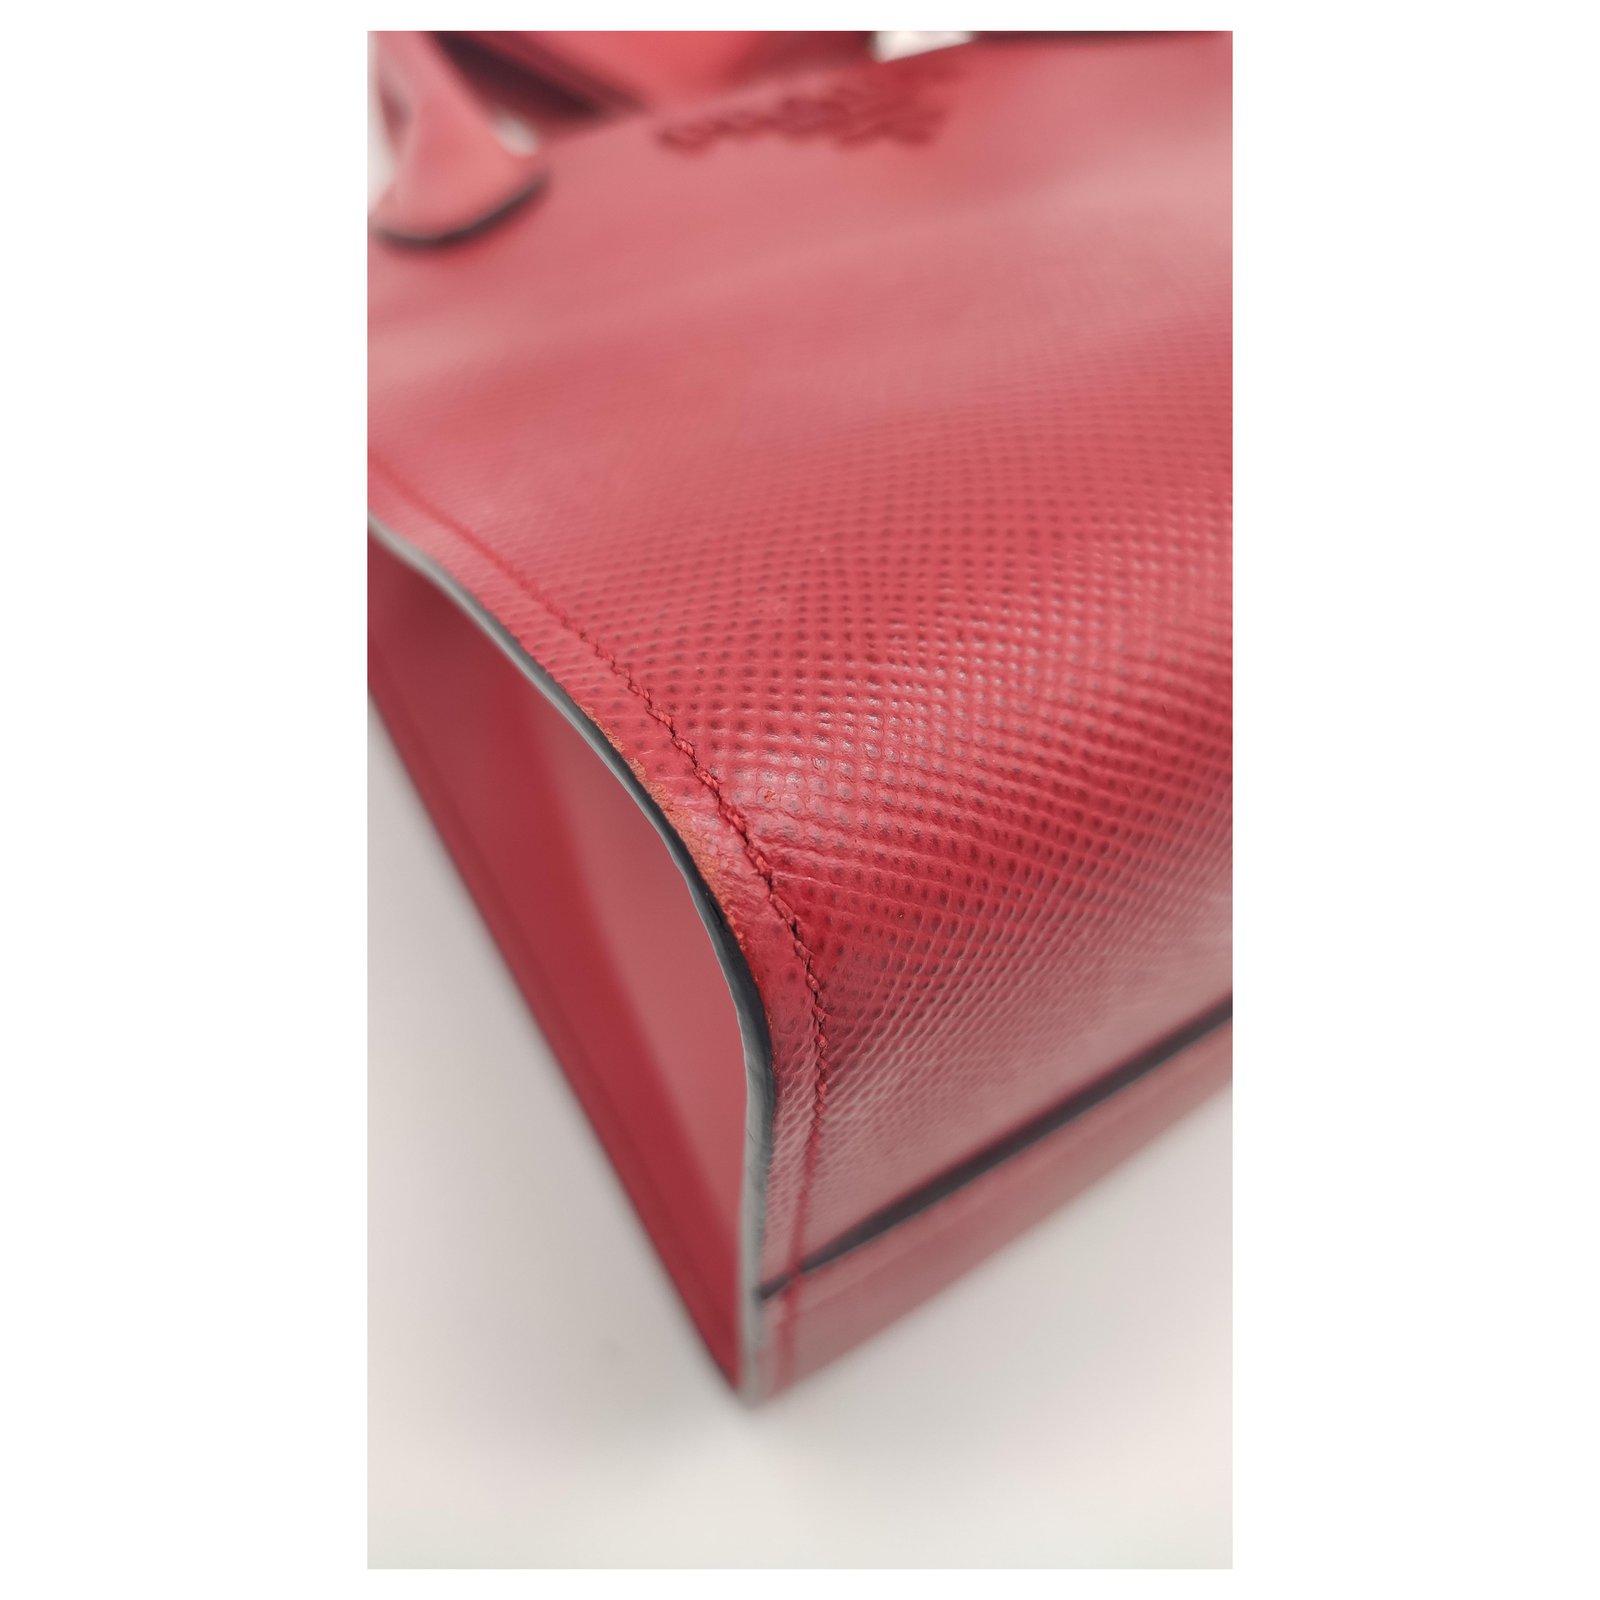 PRADA saffiano red box bag